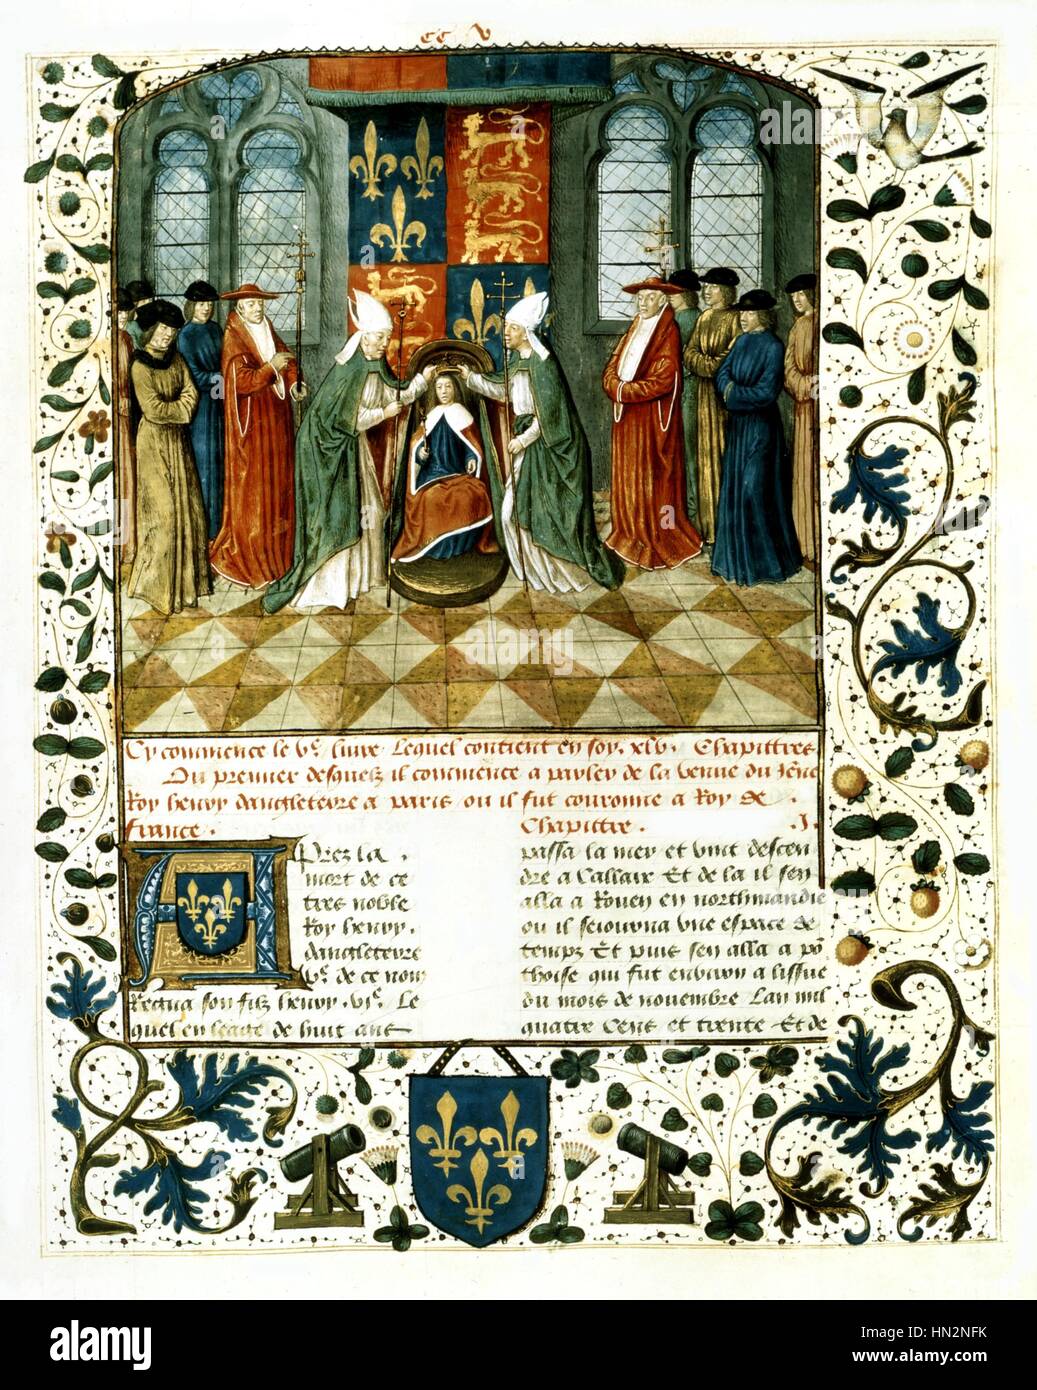 Anonyme Miniatur König Henry VI von England, (1422-1461), gekrönt als König von Frankreich, 16 Dezember 1431 Frankreich Stockfoto